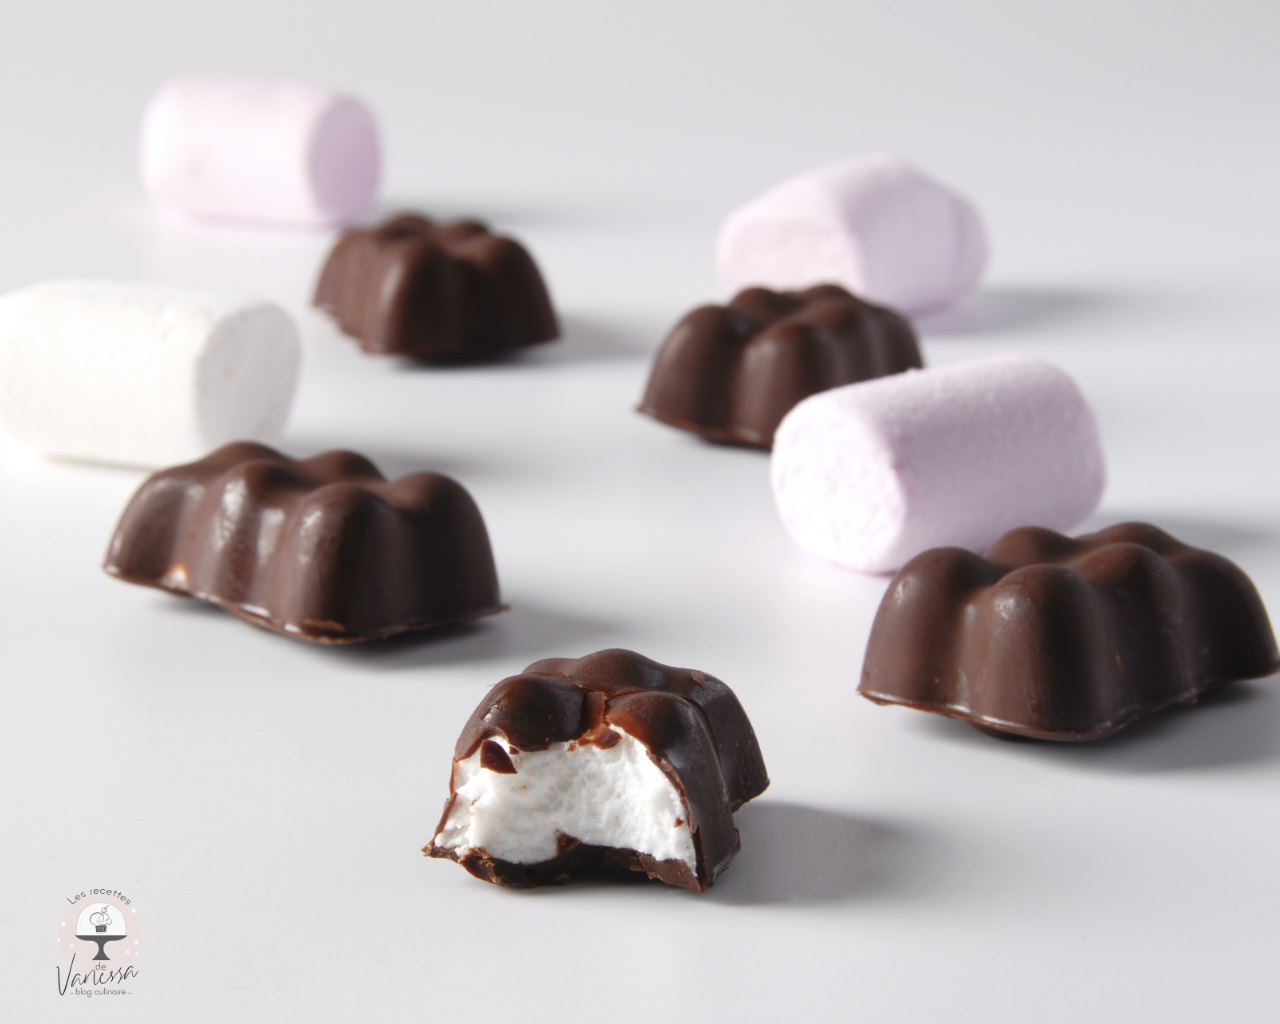 Recette Oursons Guimauve et Chocolat Blanc - Blog de